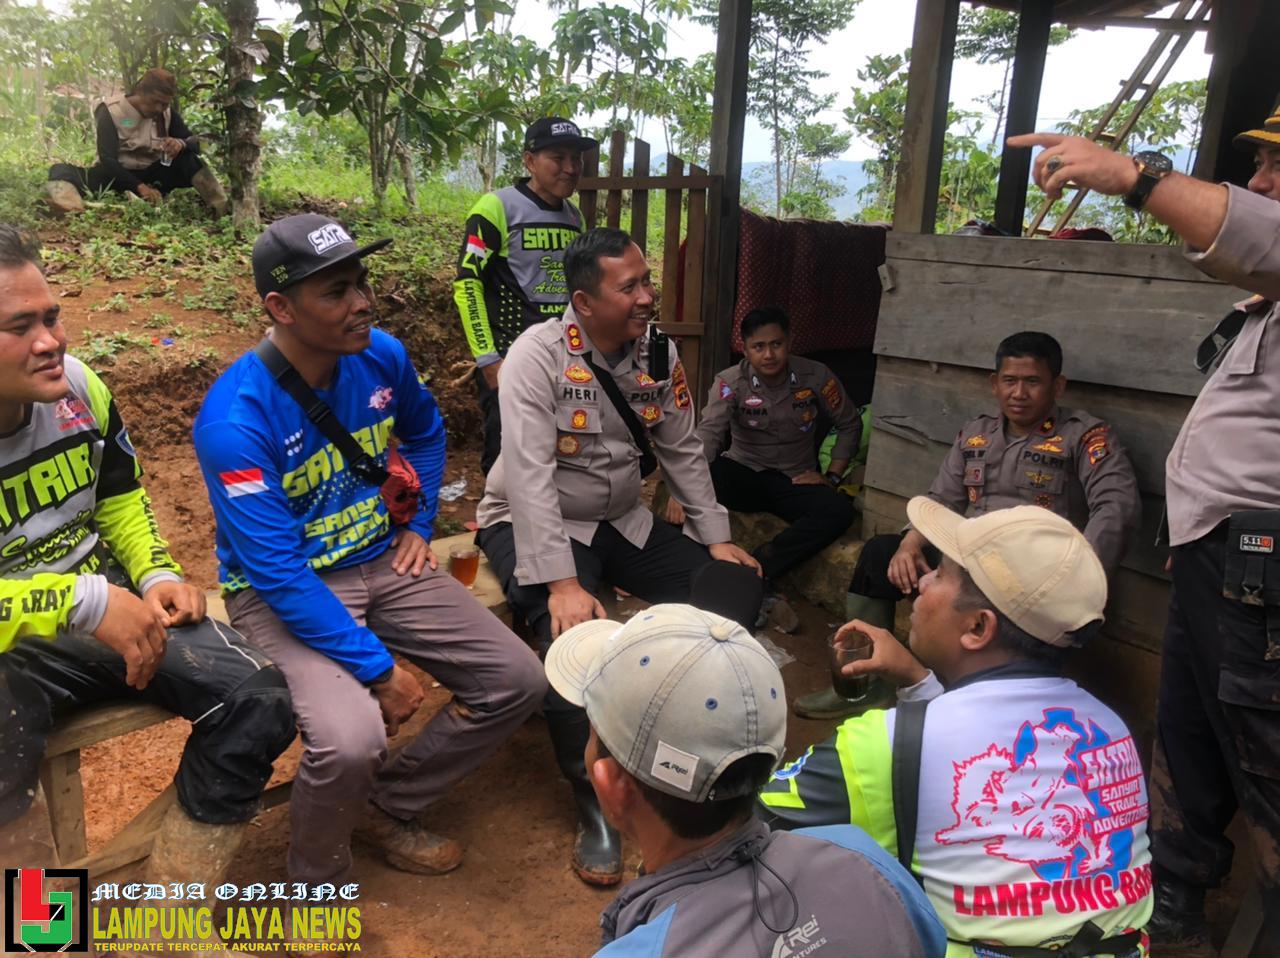 Jumat Curhat, Kapolres Lampung Barat Dengar Keluhan Warga Pengungsian Tanah Longsor